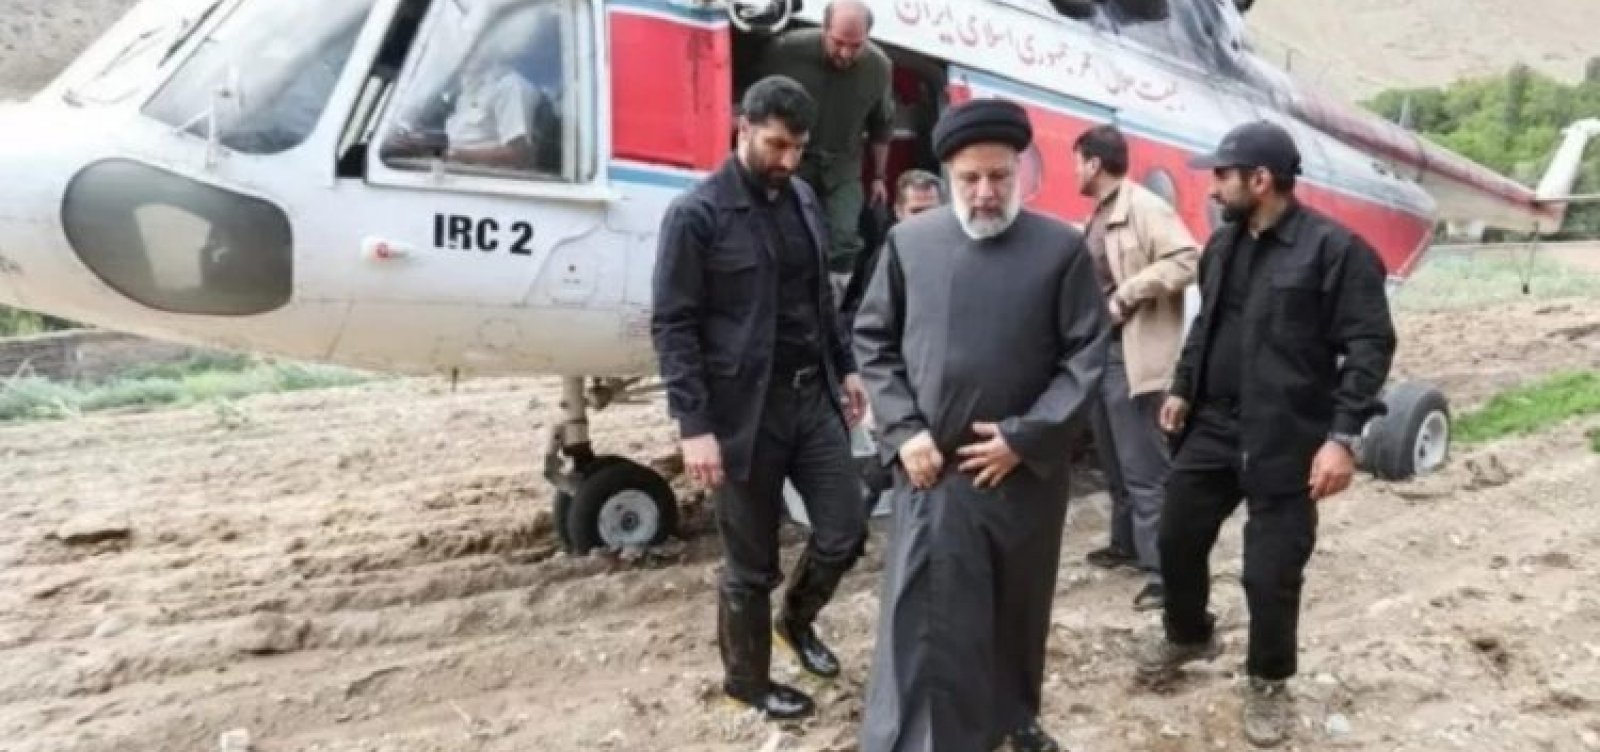 Falha técnica gerou queda de helicóptero que matou presidente do Irã 